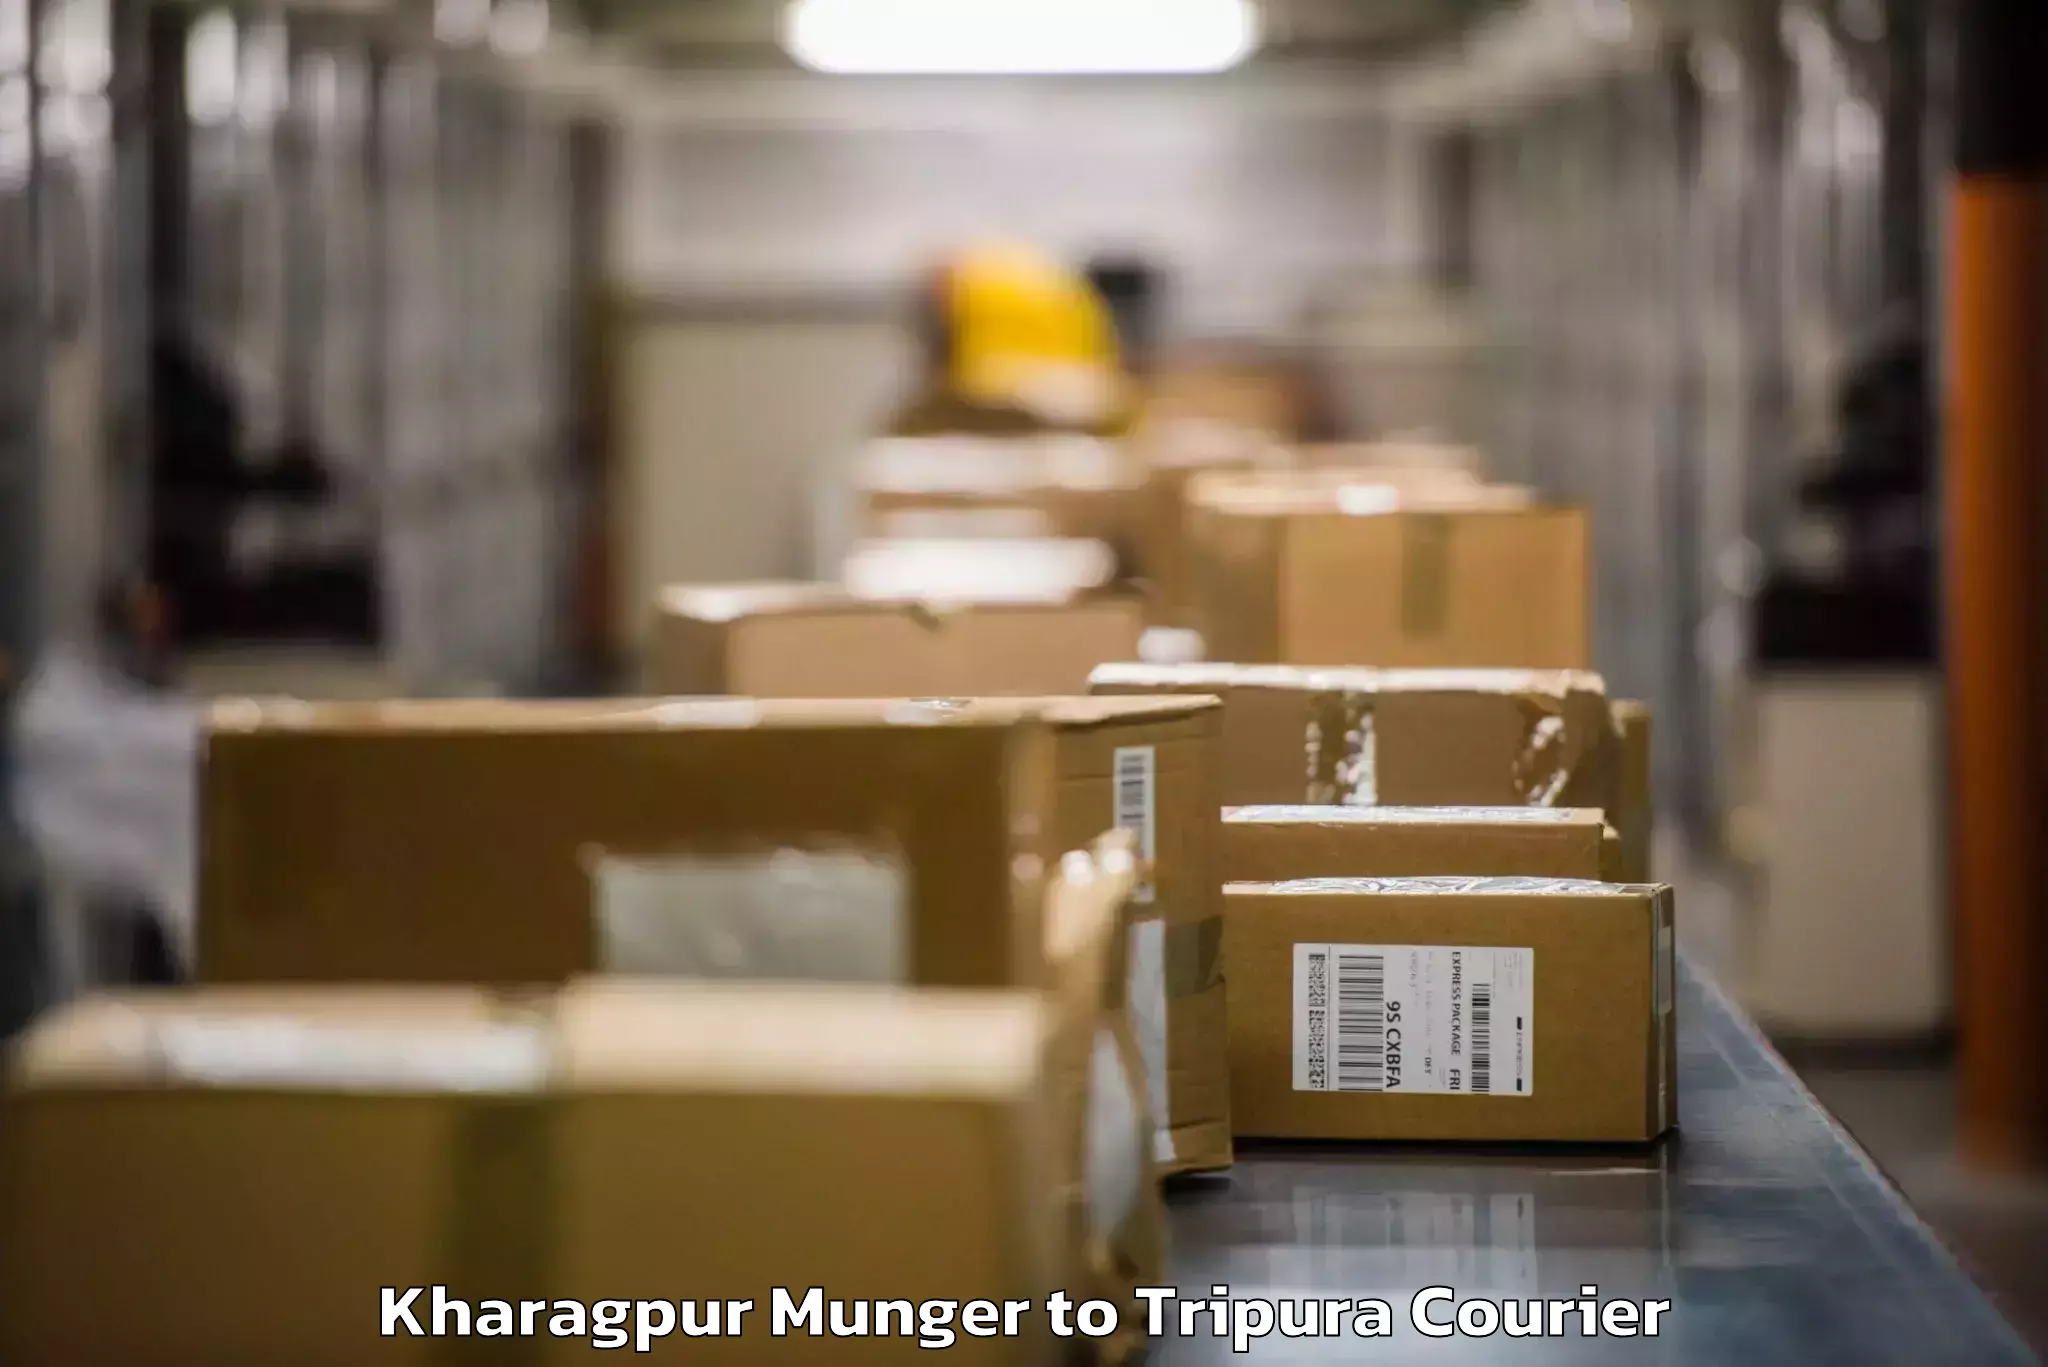 Baggage transport coordination Kharagpur Munger to Kailashahar